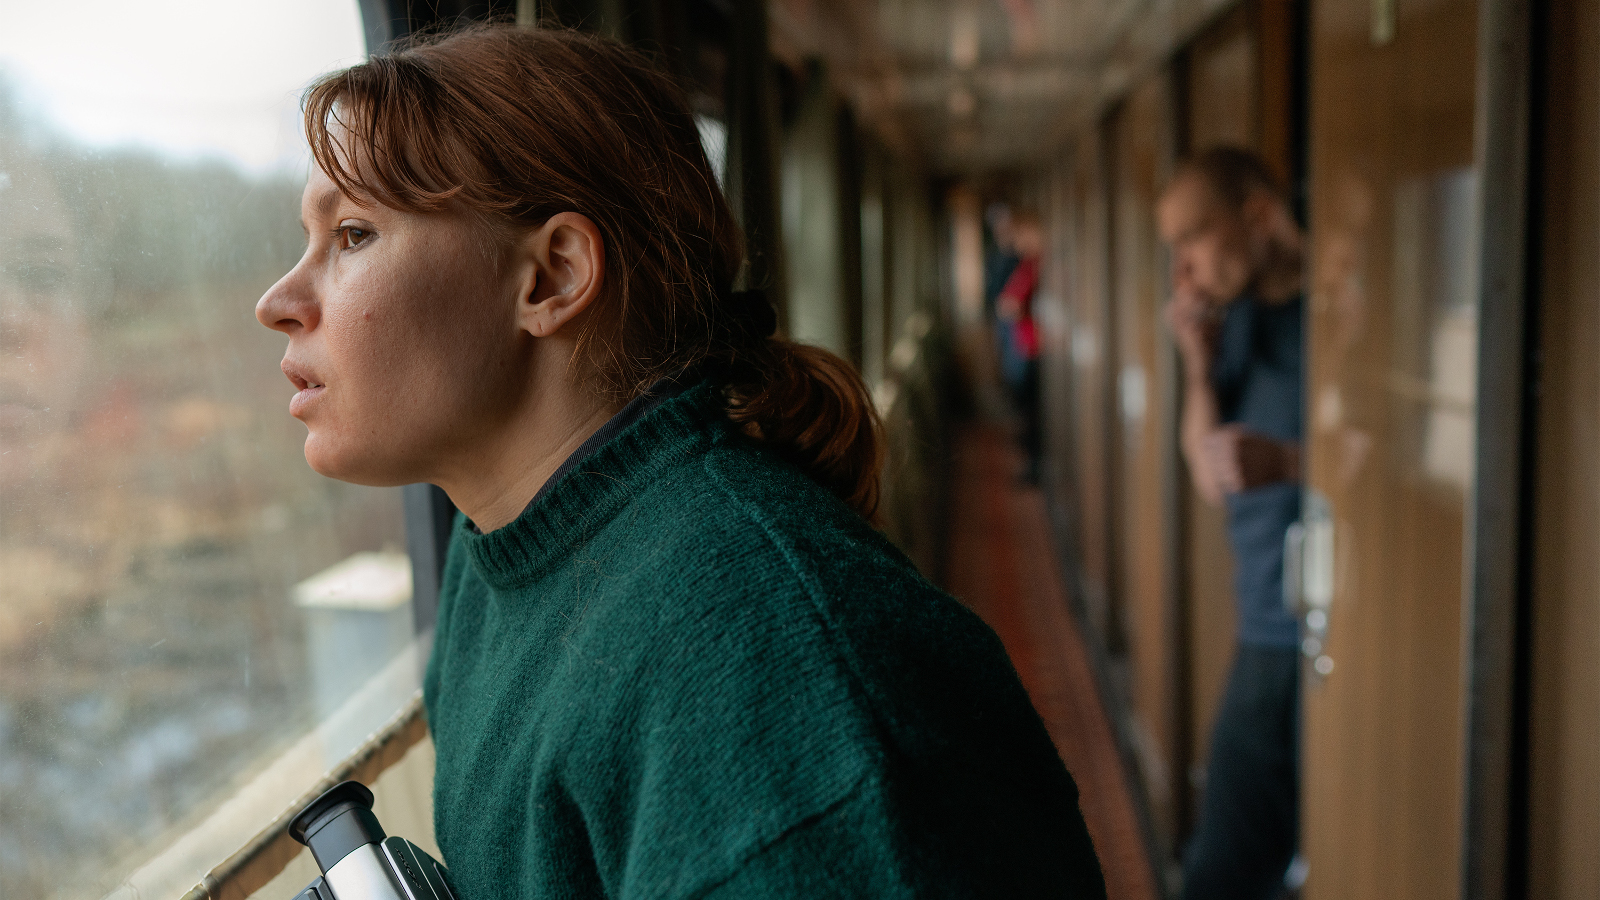 Kuvassa on Seidi Haarla junan käytävässä ja katsoo ikkunasta ulos maisemaa.  Kuva on sivukuva ja lähikuva kasvoista.